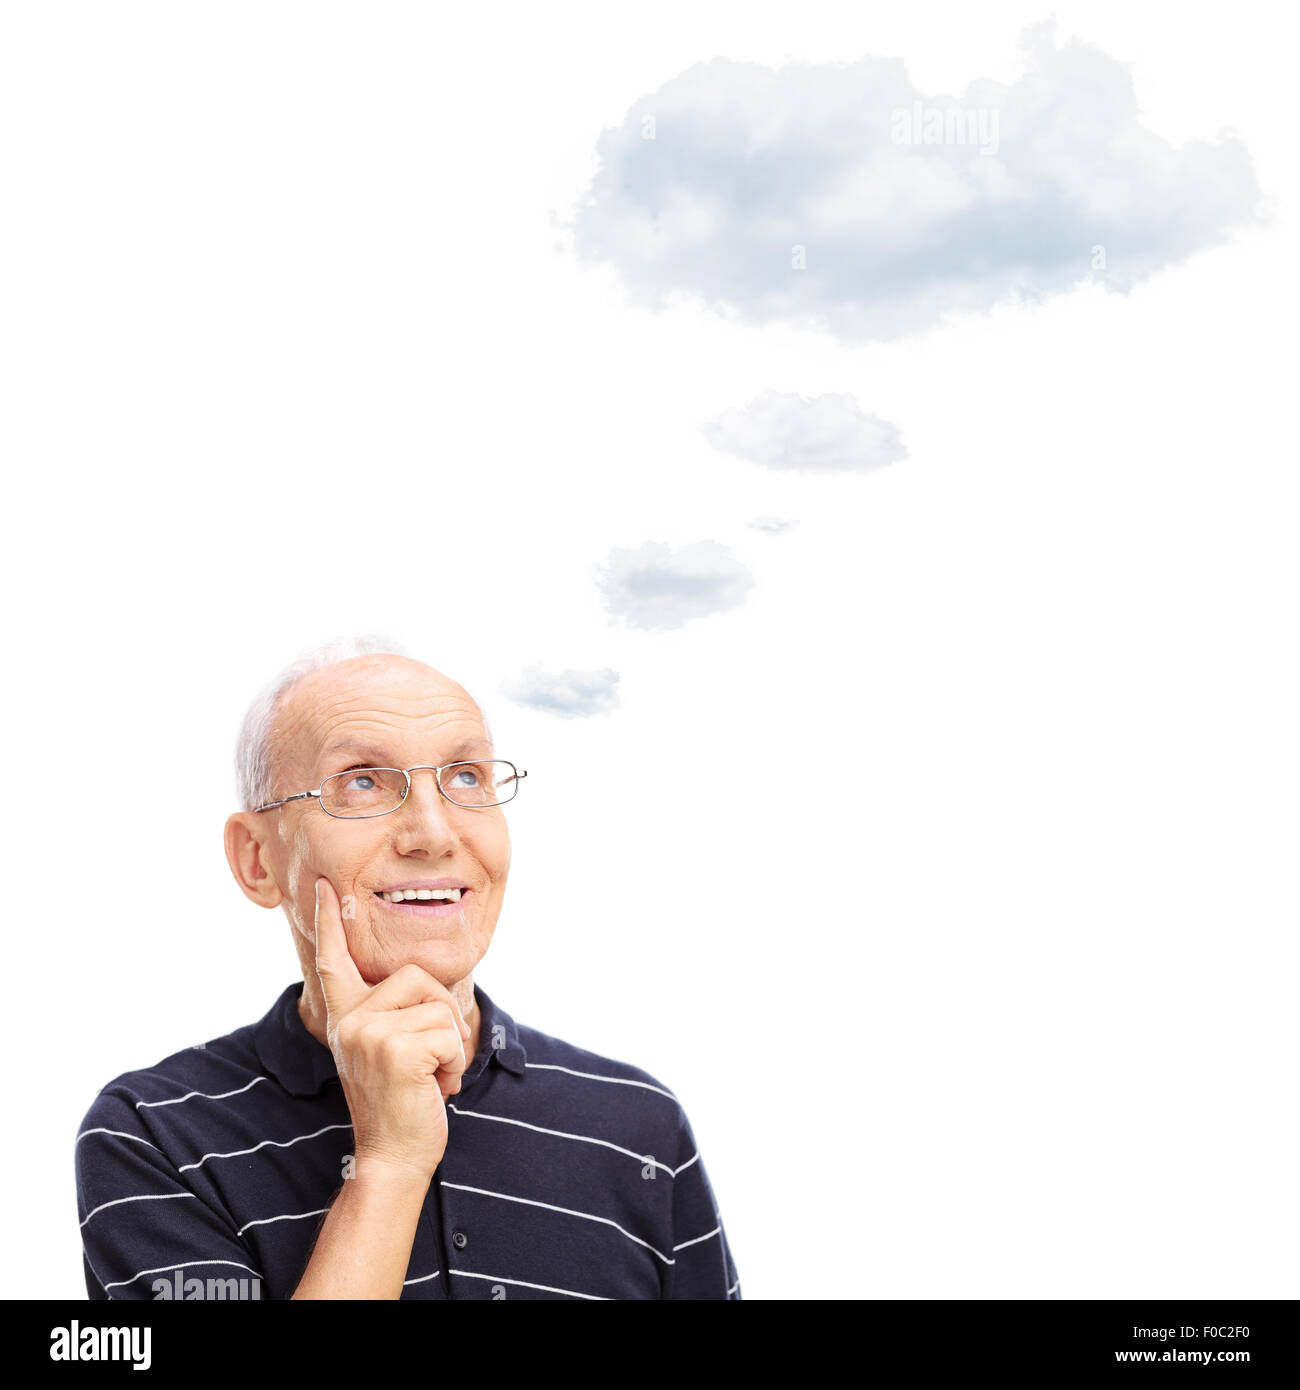 Malinconici senior gentleman pensando a qualcosa con una nuvola che fluttua sopra la sua testa isolata su sfondo bianco Foto Stock